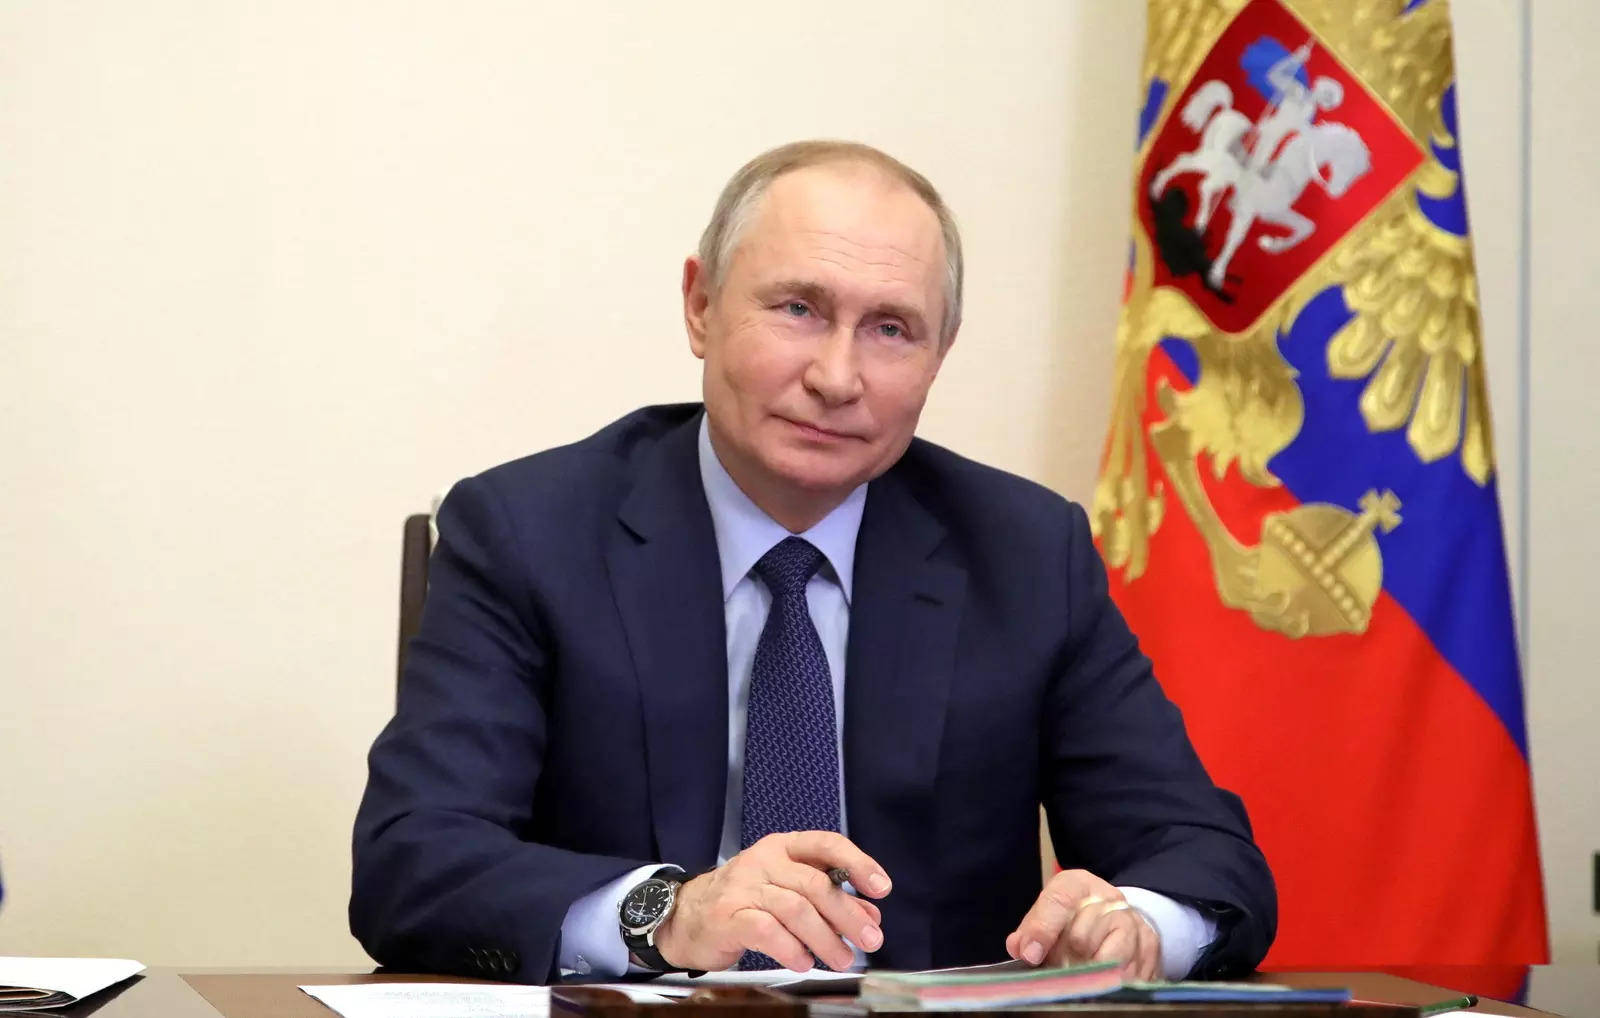 Vladimirputin Sonriendo Durante Una Conferencia. Fondo de pantalla